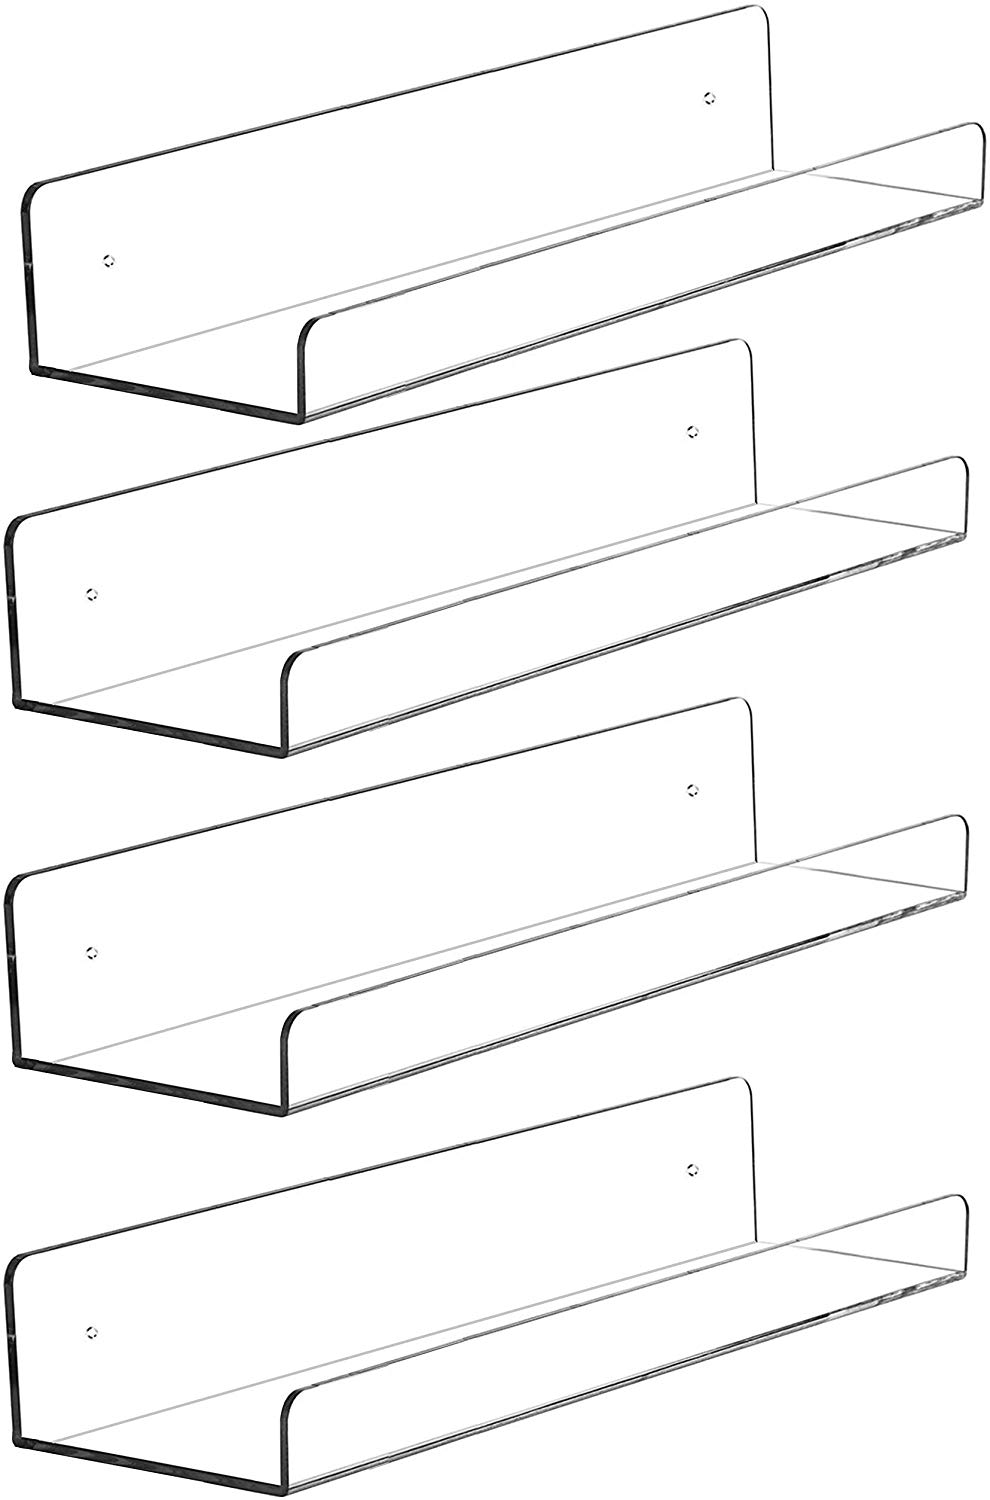 Cq acrylic Invisible Floating Ledge Shelf, Set of 4